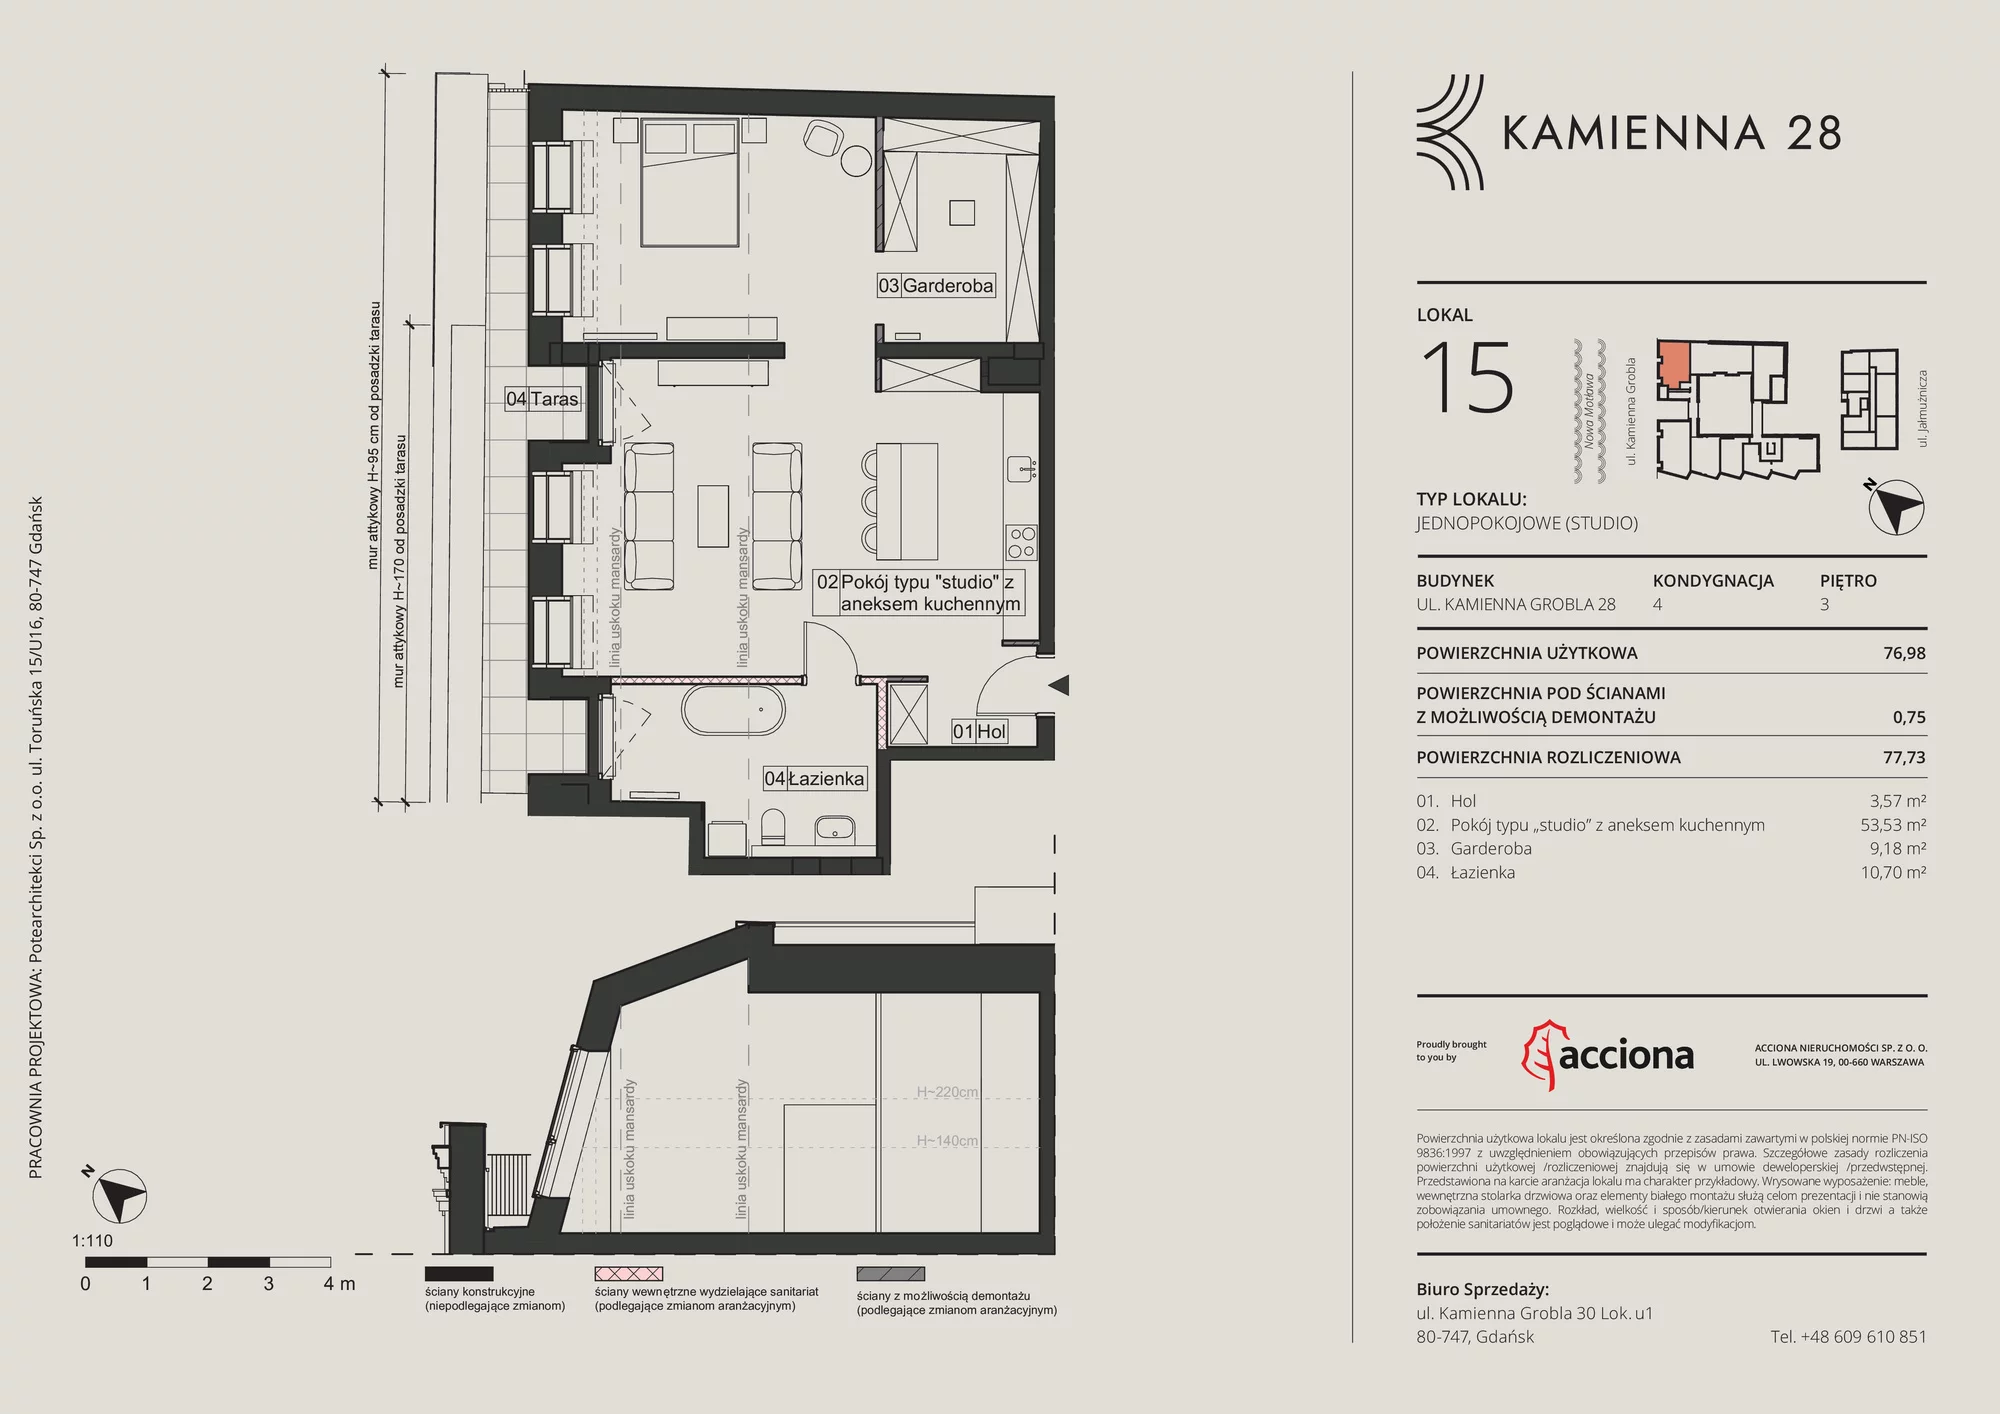 Mieszkanie 77,73 m², piętro 3, oferta nr 28.15, Kamienna 28, Gdańsk, Śródmieście, Dolne Miasto, ul. Kamienna Grobla 28/29